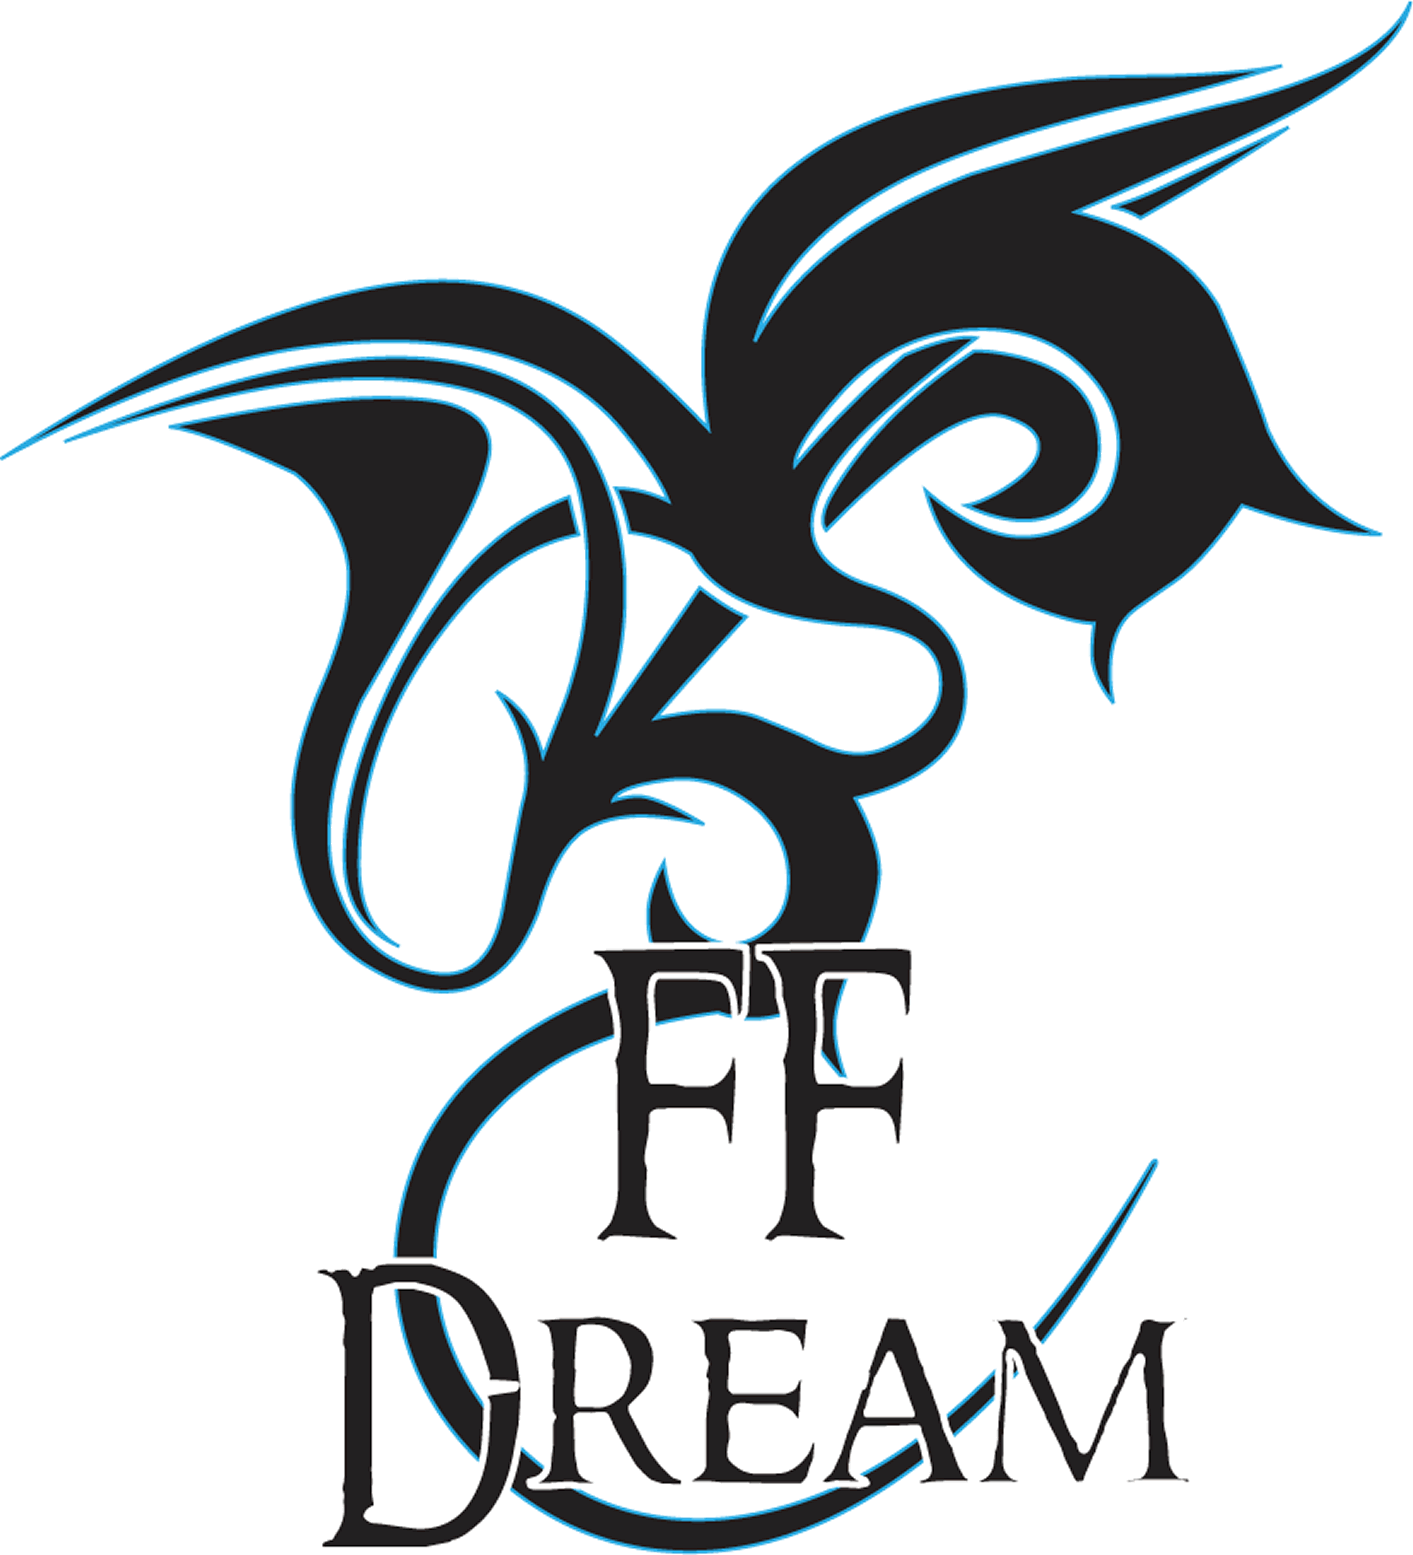 FFDream.com